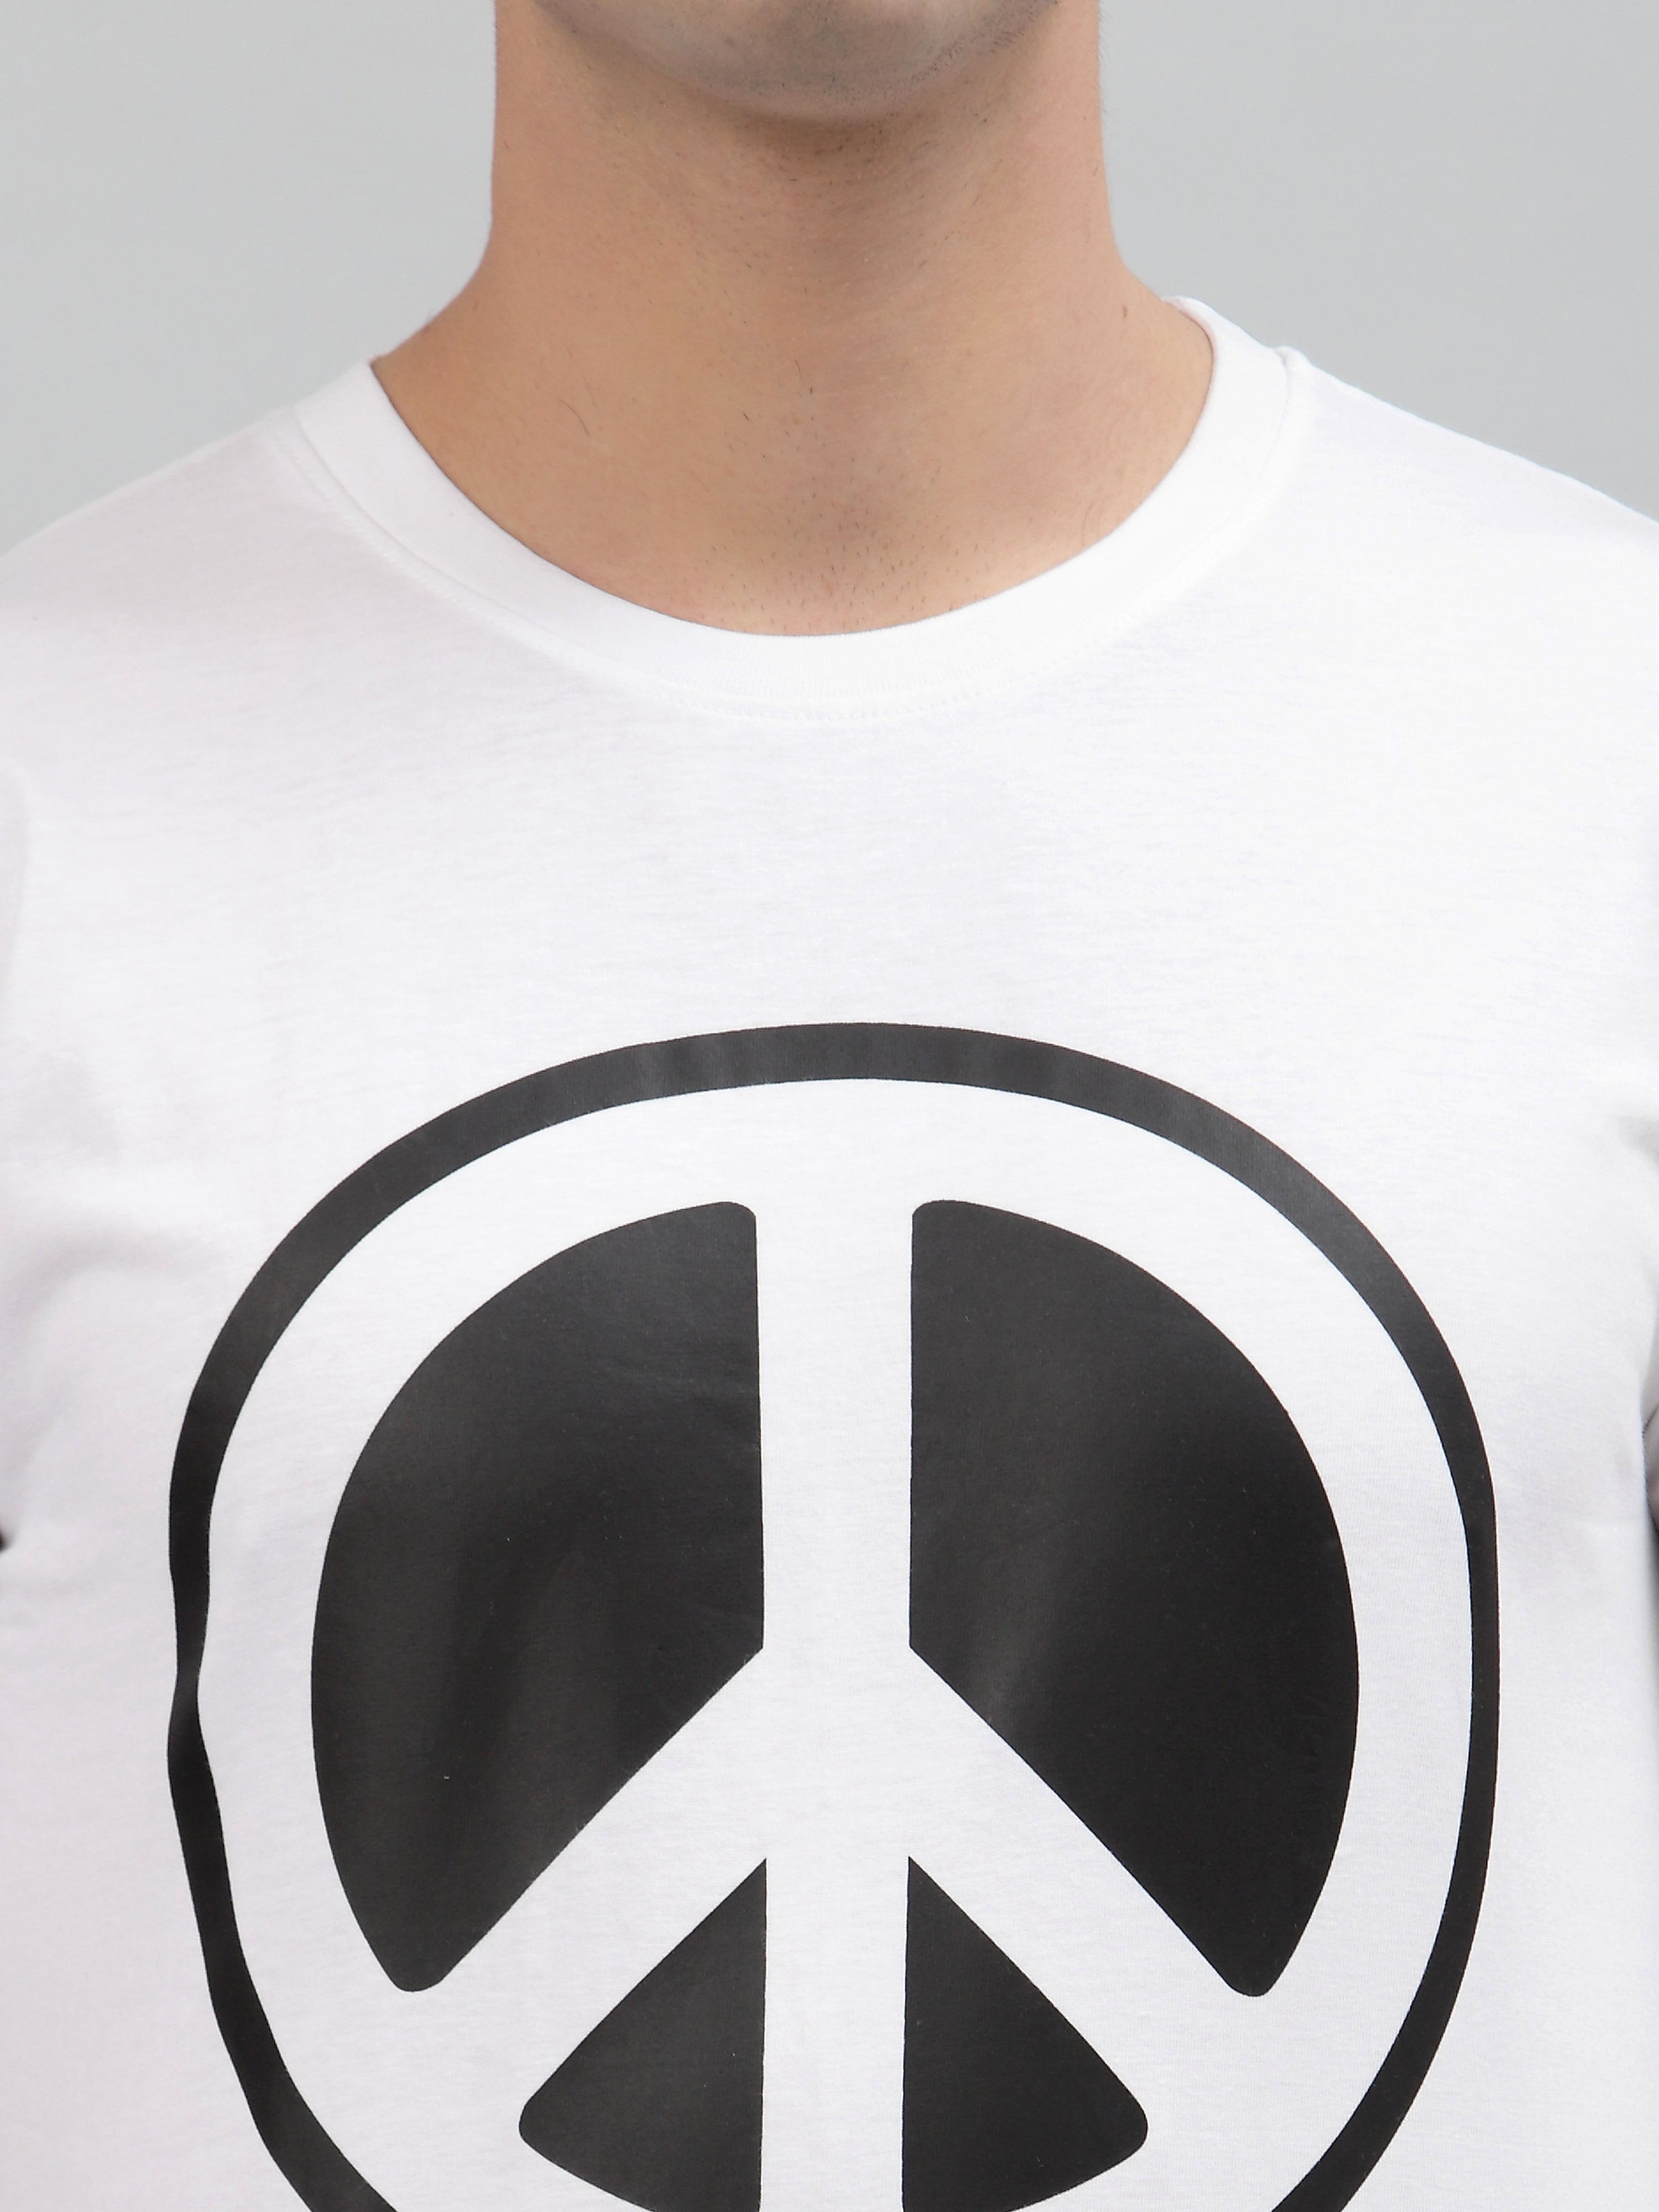 Peace Unisex White Regular T-shirt